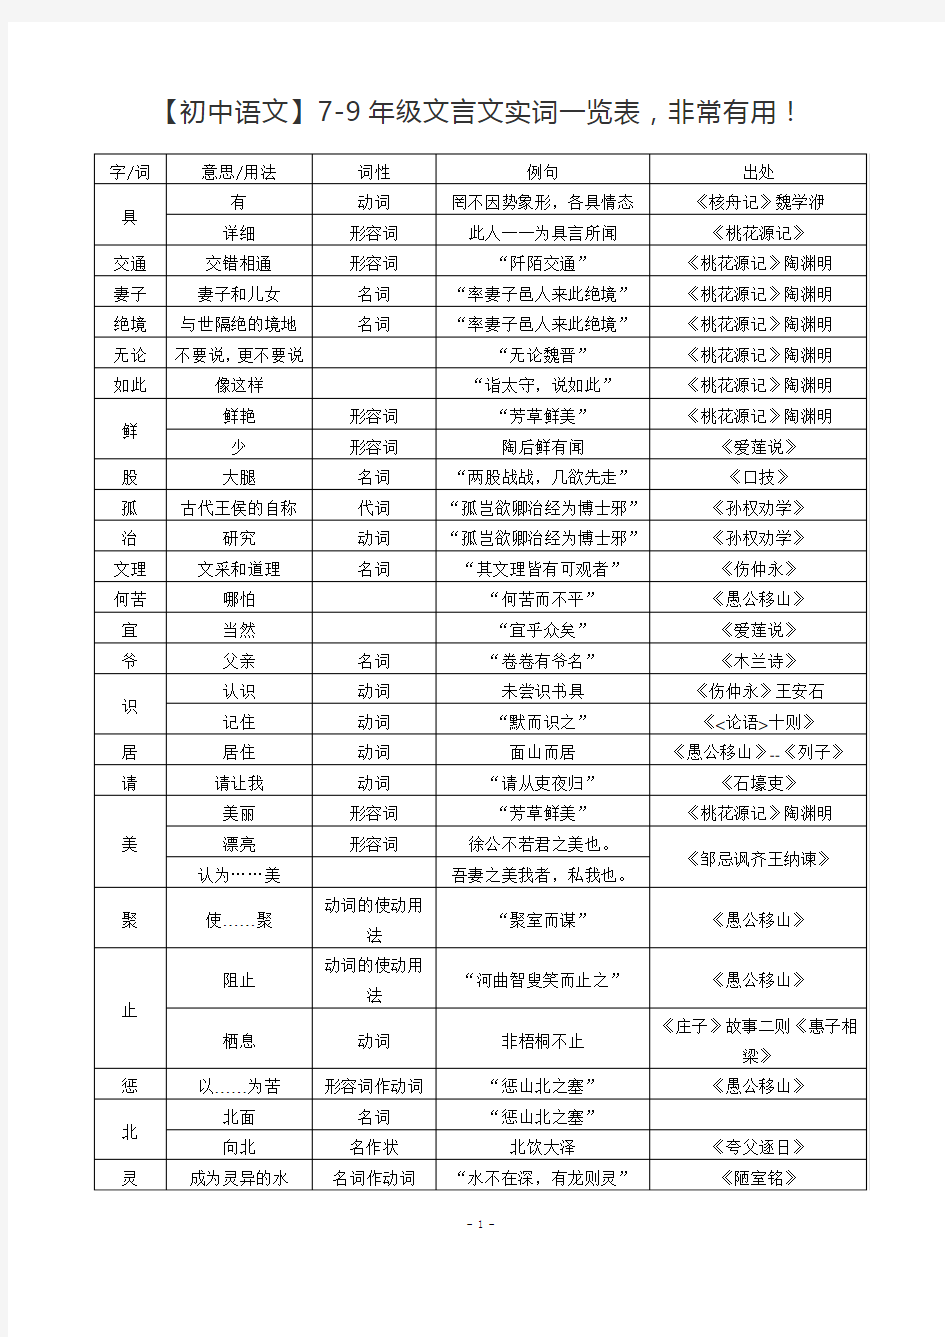 初中文言文实词一览表非常有用